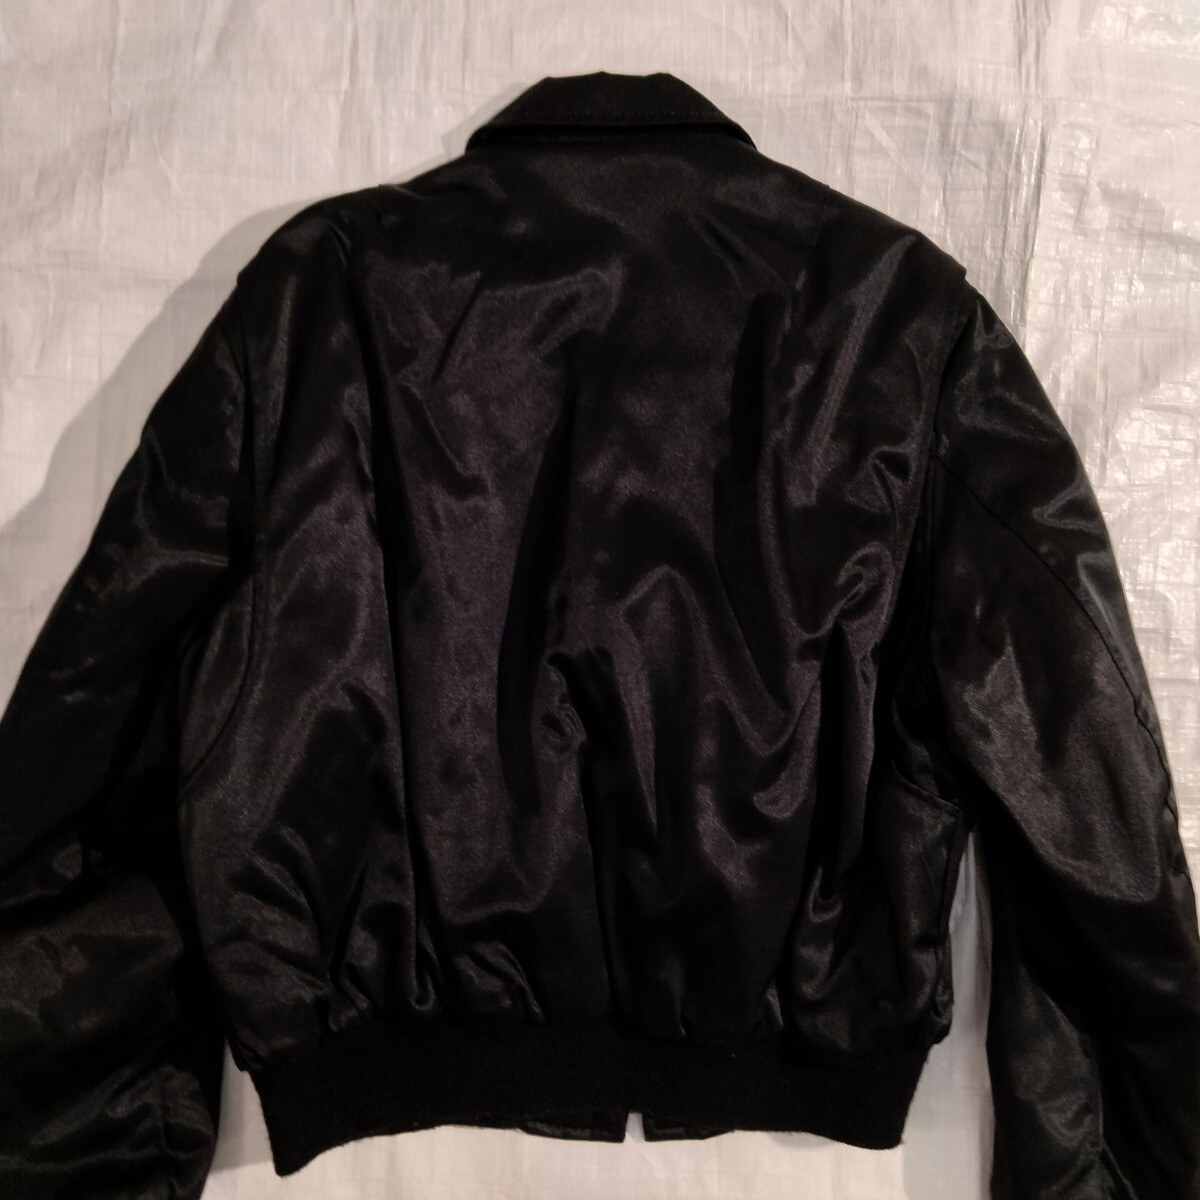 SPIEWAK ... cwu-55p titan cloth ... бак  ... 45p black  черный 　 черный 　... light  пиджак  Ｌ usa  сделано в США  　... материал 　